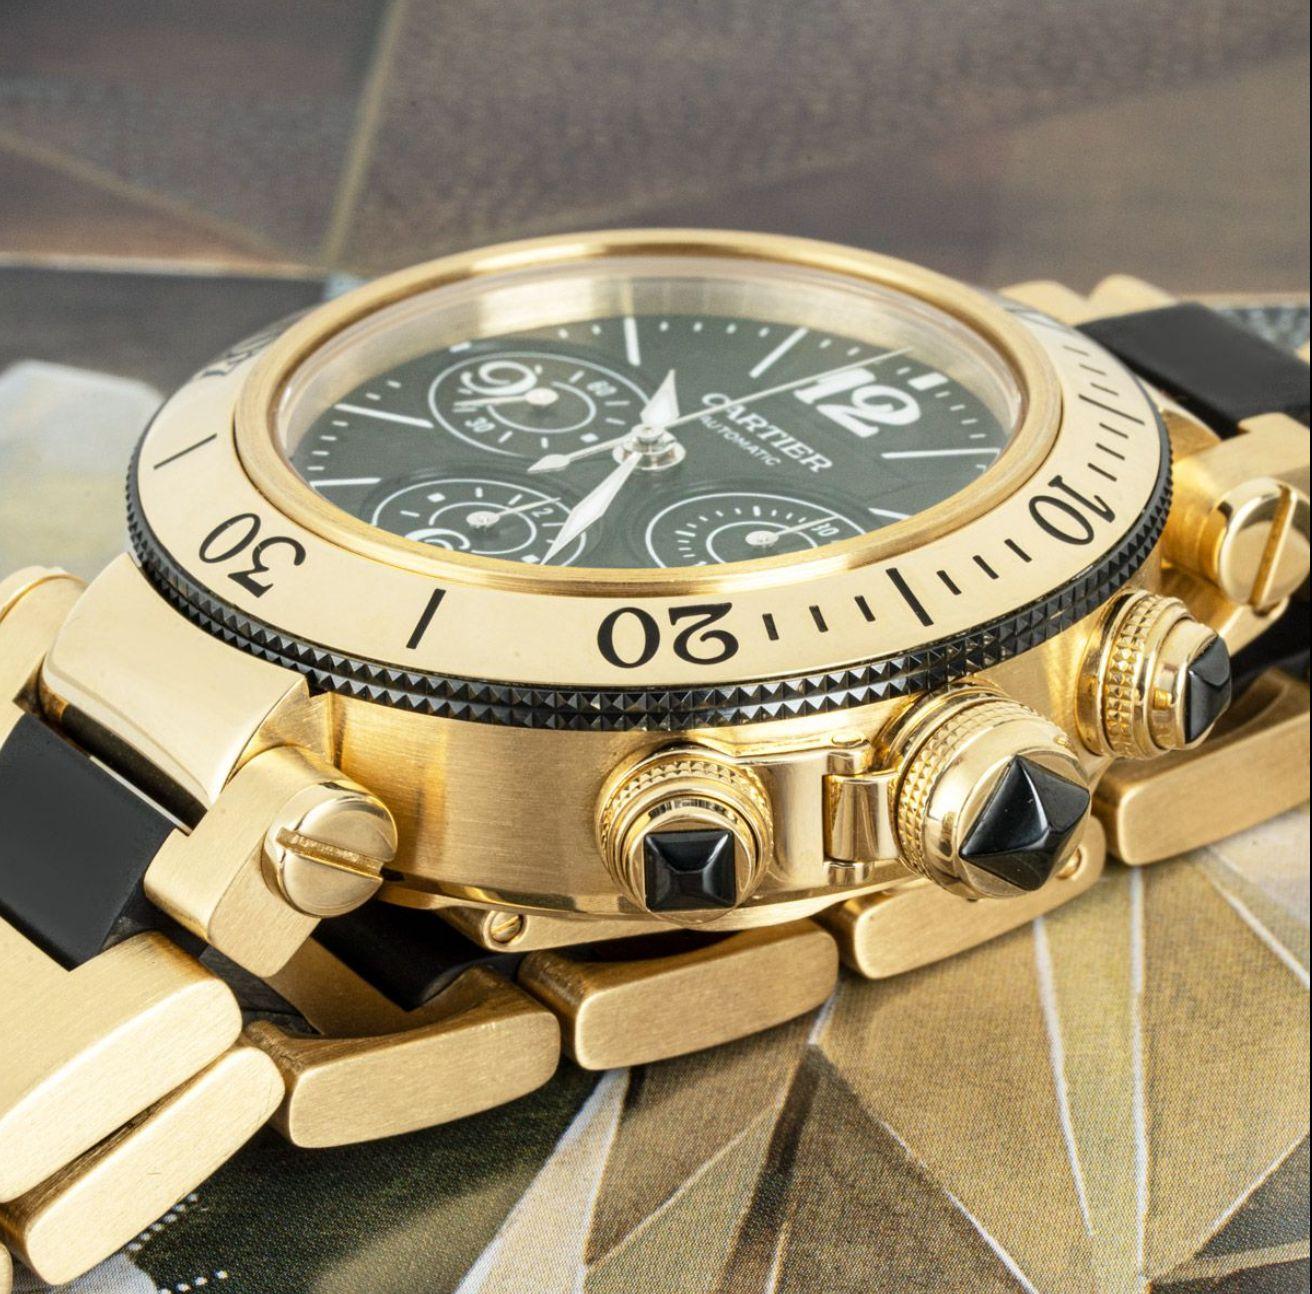 Une montre-bracelet Cartier Pasha Seatimer en or jaune de 42 mm. Cadran noir avec chiffres arabes, 3 compteurs de chronographe et un guichet de date. Le cadran est complété par une lunette tournante en or jaune et une couronne protégée par un